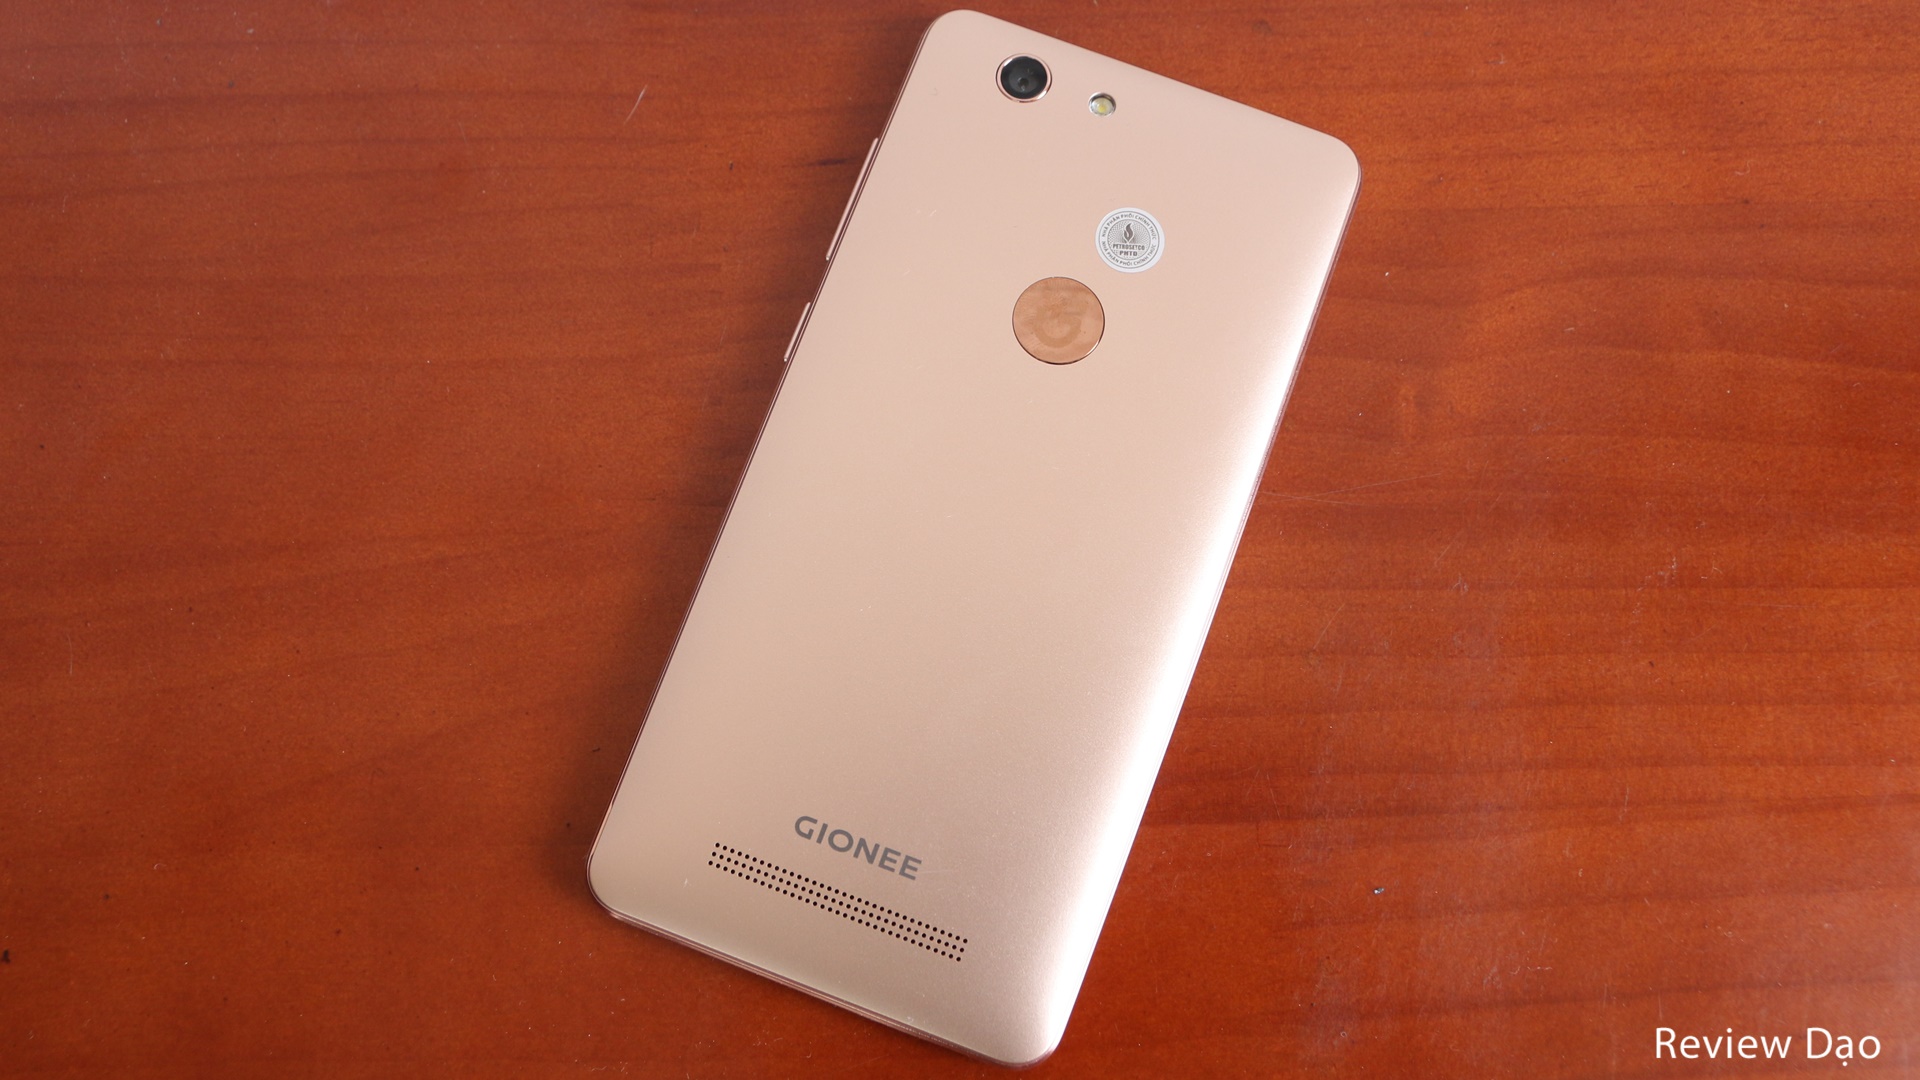 Đánh giá chi tiết Gionee F103 Pro: chính hãng 3 triệu, 3GB RAM, camera  selfie tốt - Review Dạo